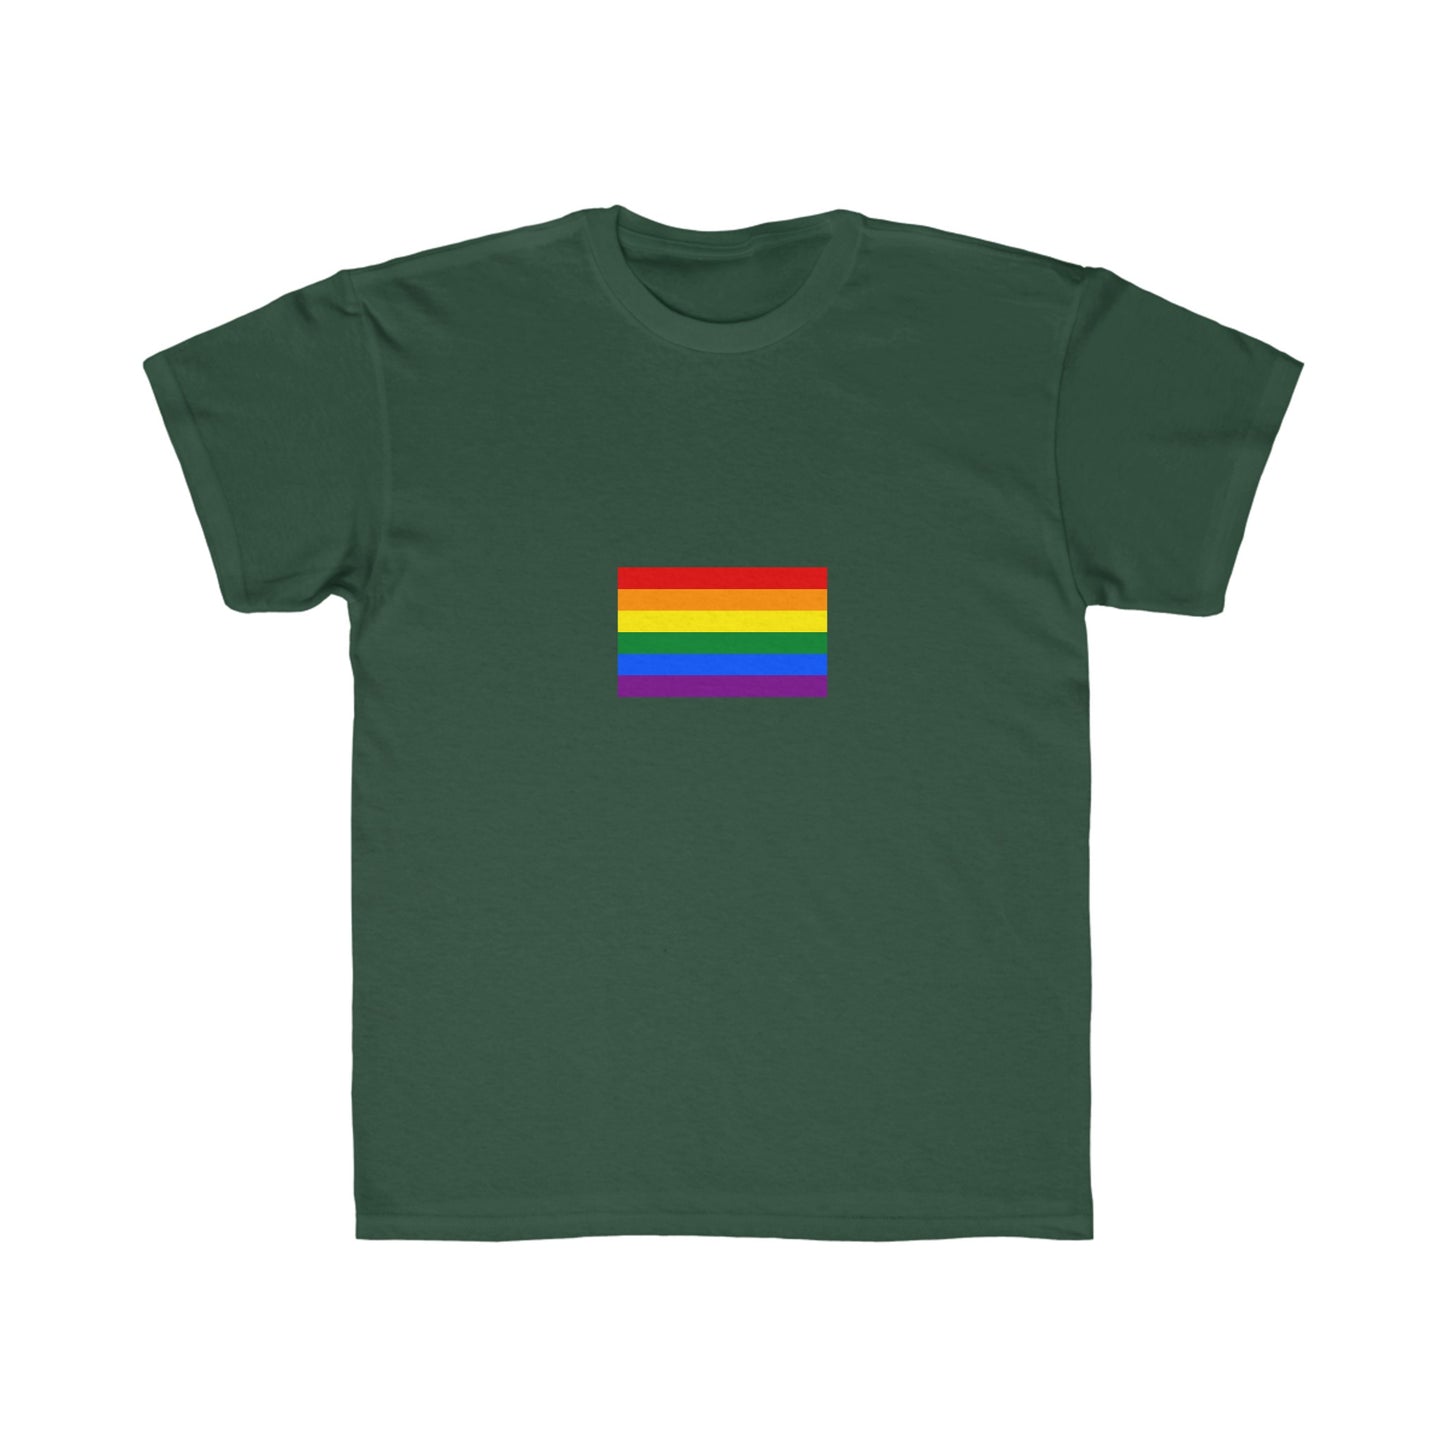 Rainbow Pride Graphic Kids T-Shirt